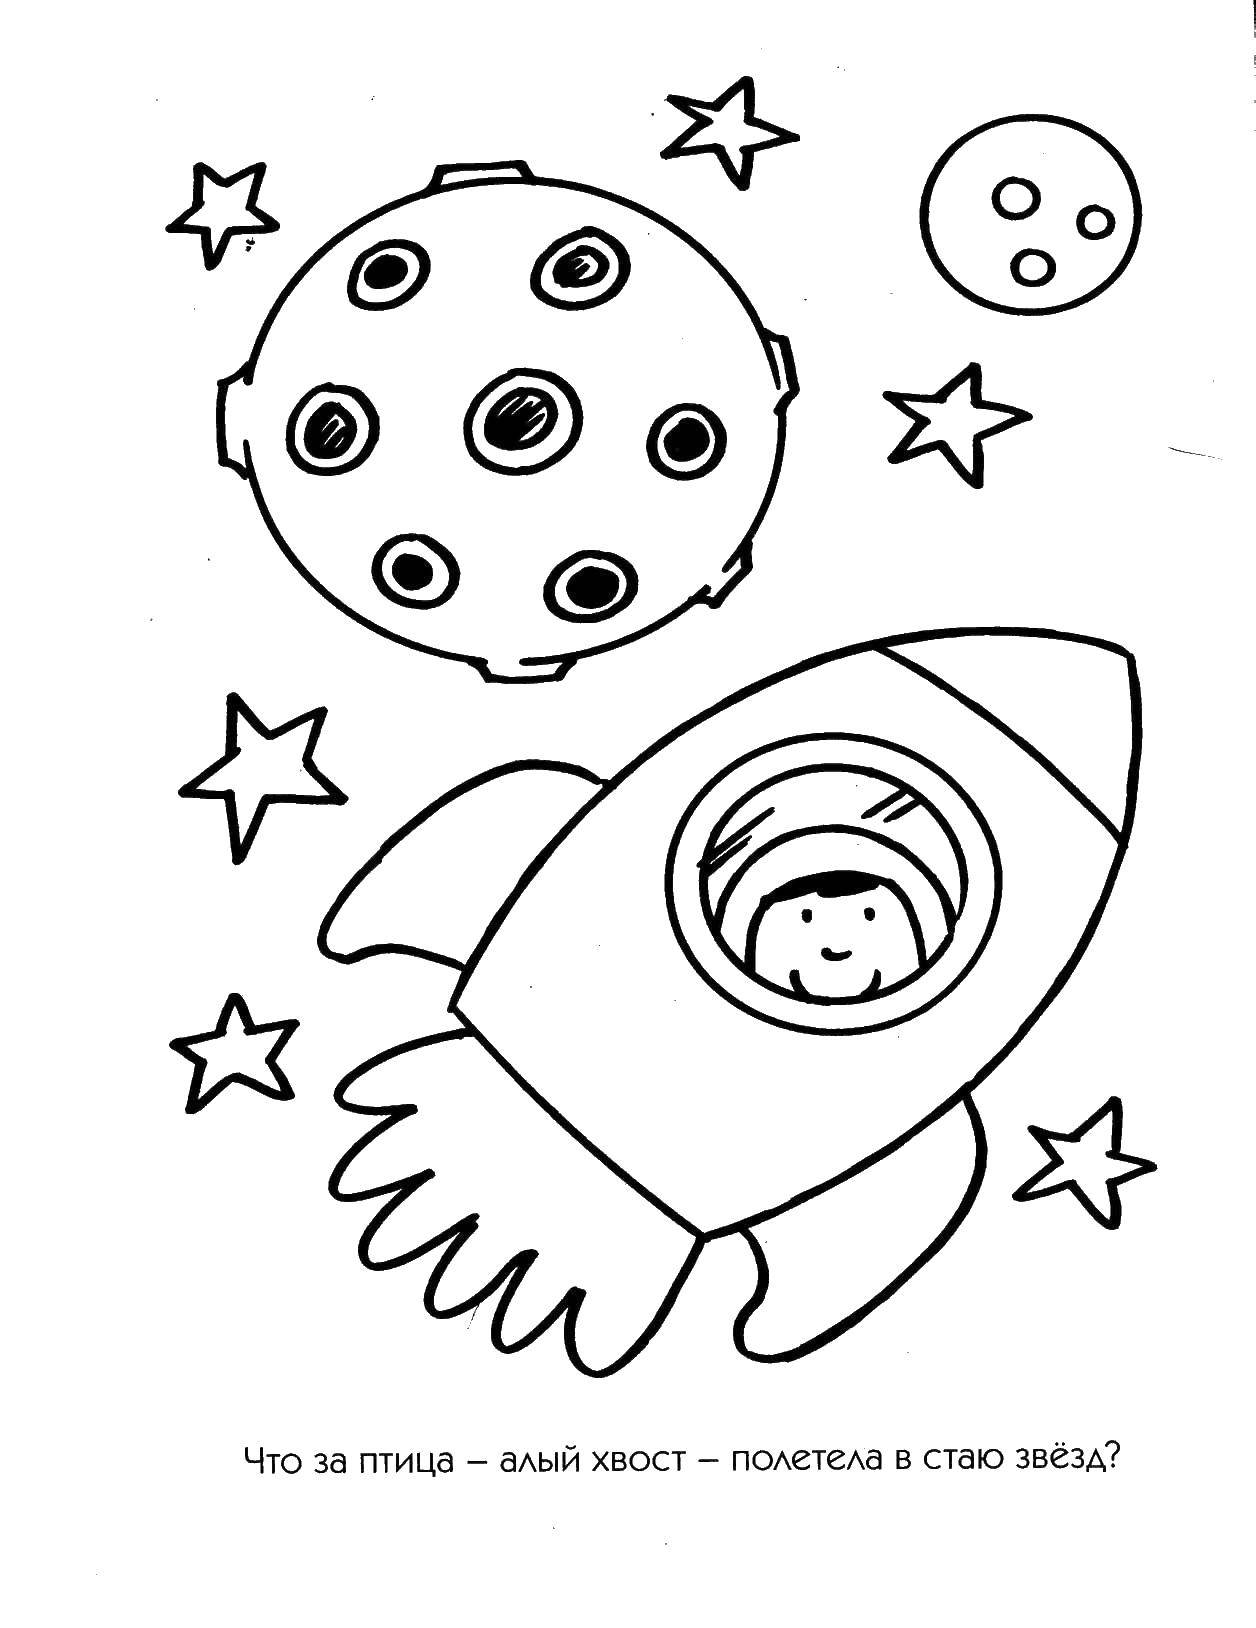 Картинки космос раскраска. Раскраска. В космосе. Раскраска Космо для детей. Космос раскраска для детей. Раскраска космос и планеты для детей.